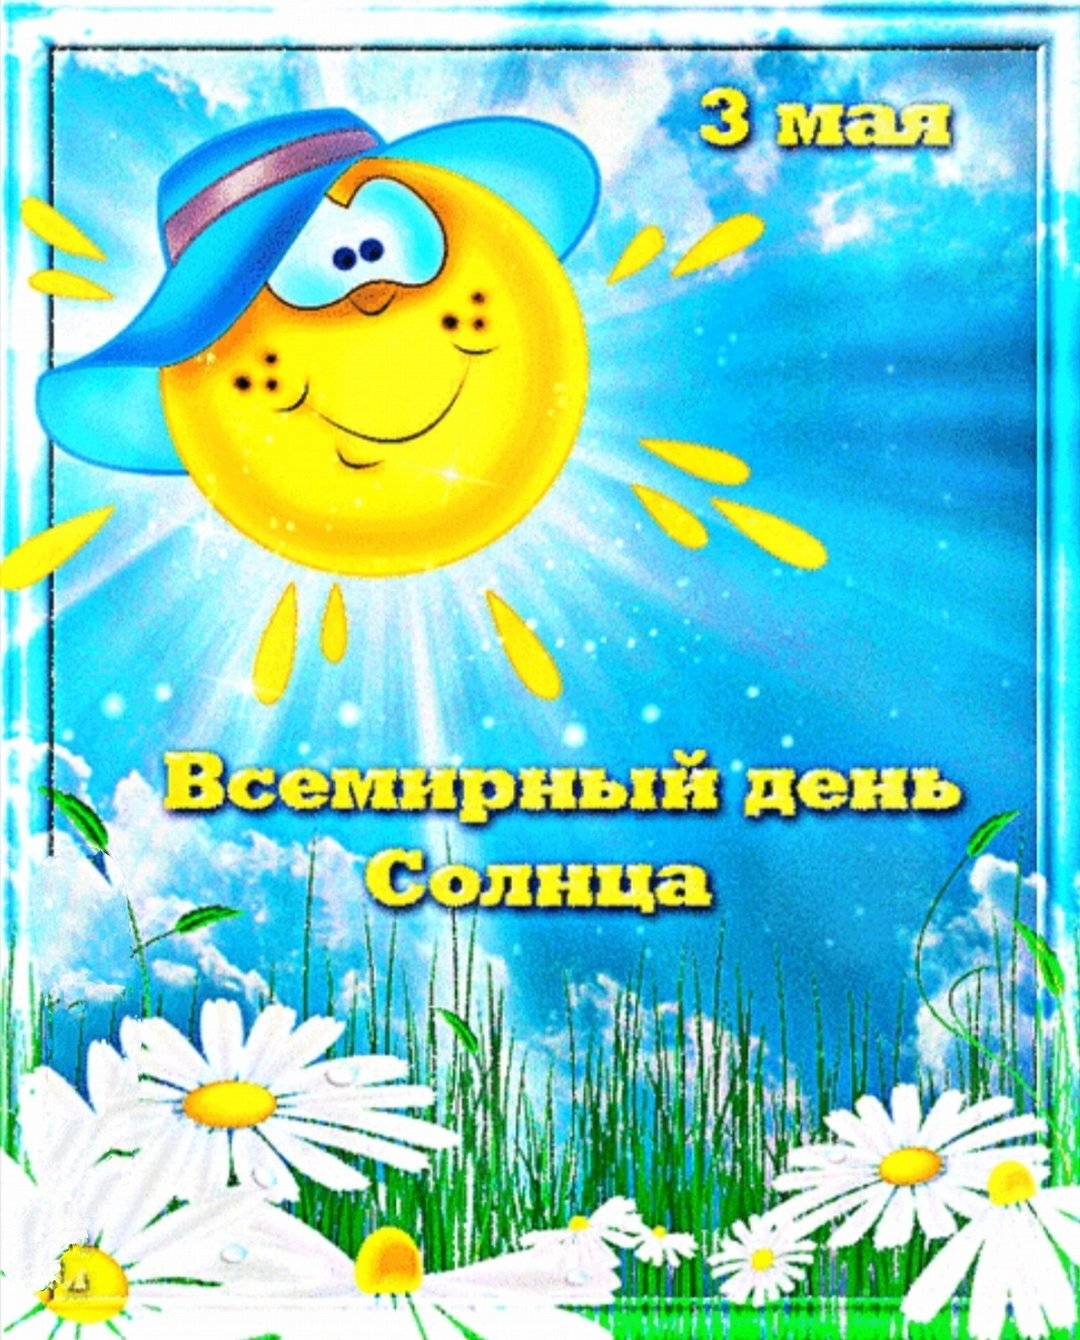 1 мая день солнца. Дни солнца. 3 Мая день солнца. День солнца поздравления. Международный день солнца поздравления.